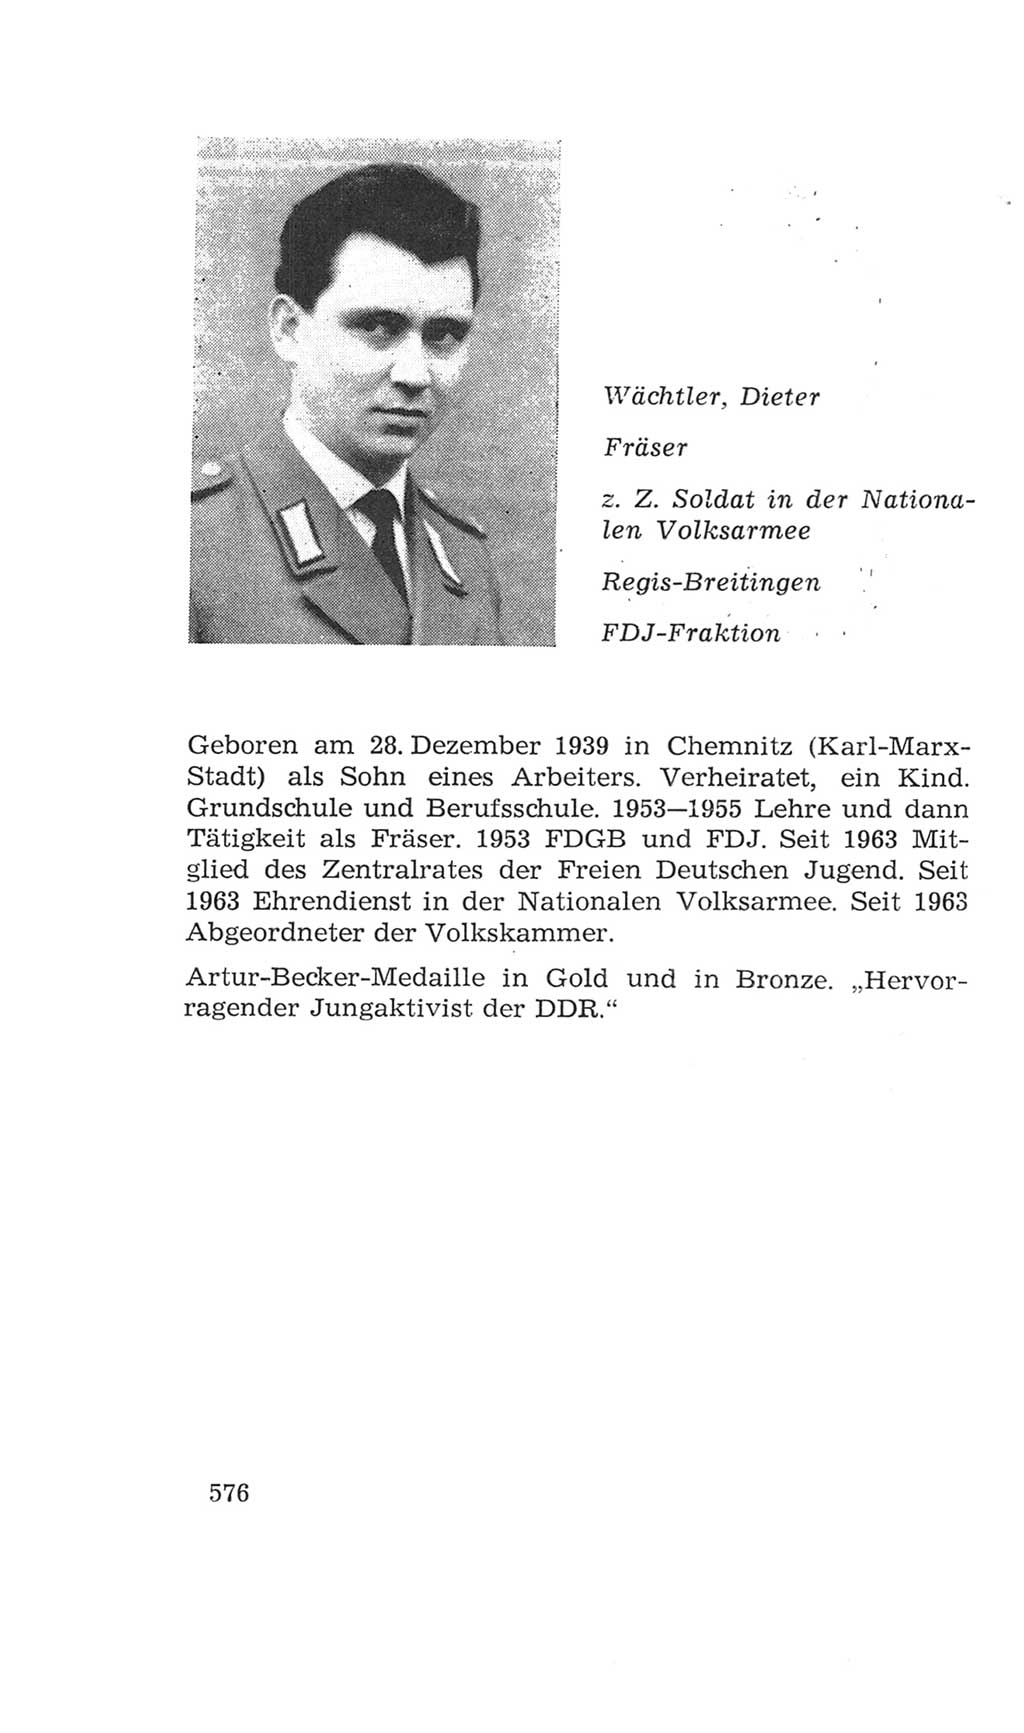 Volkskammer (VK) der Deutschen Demokratischen Republik (DDR), 4. Wahlperiode 1963-1967, Seite 576 (VK. DDR 4. WP. 1963-1967, S. 576)